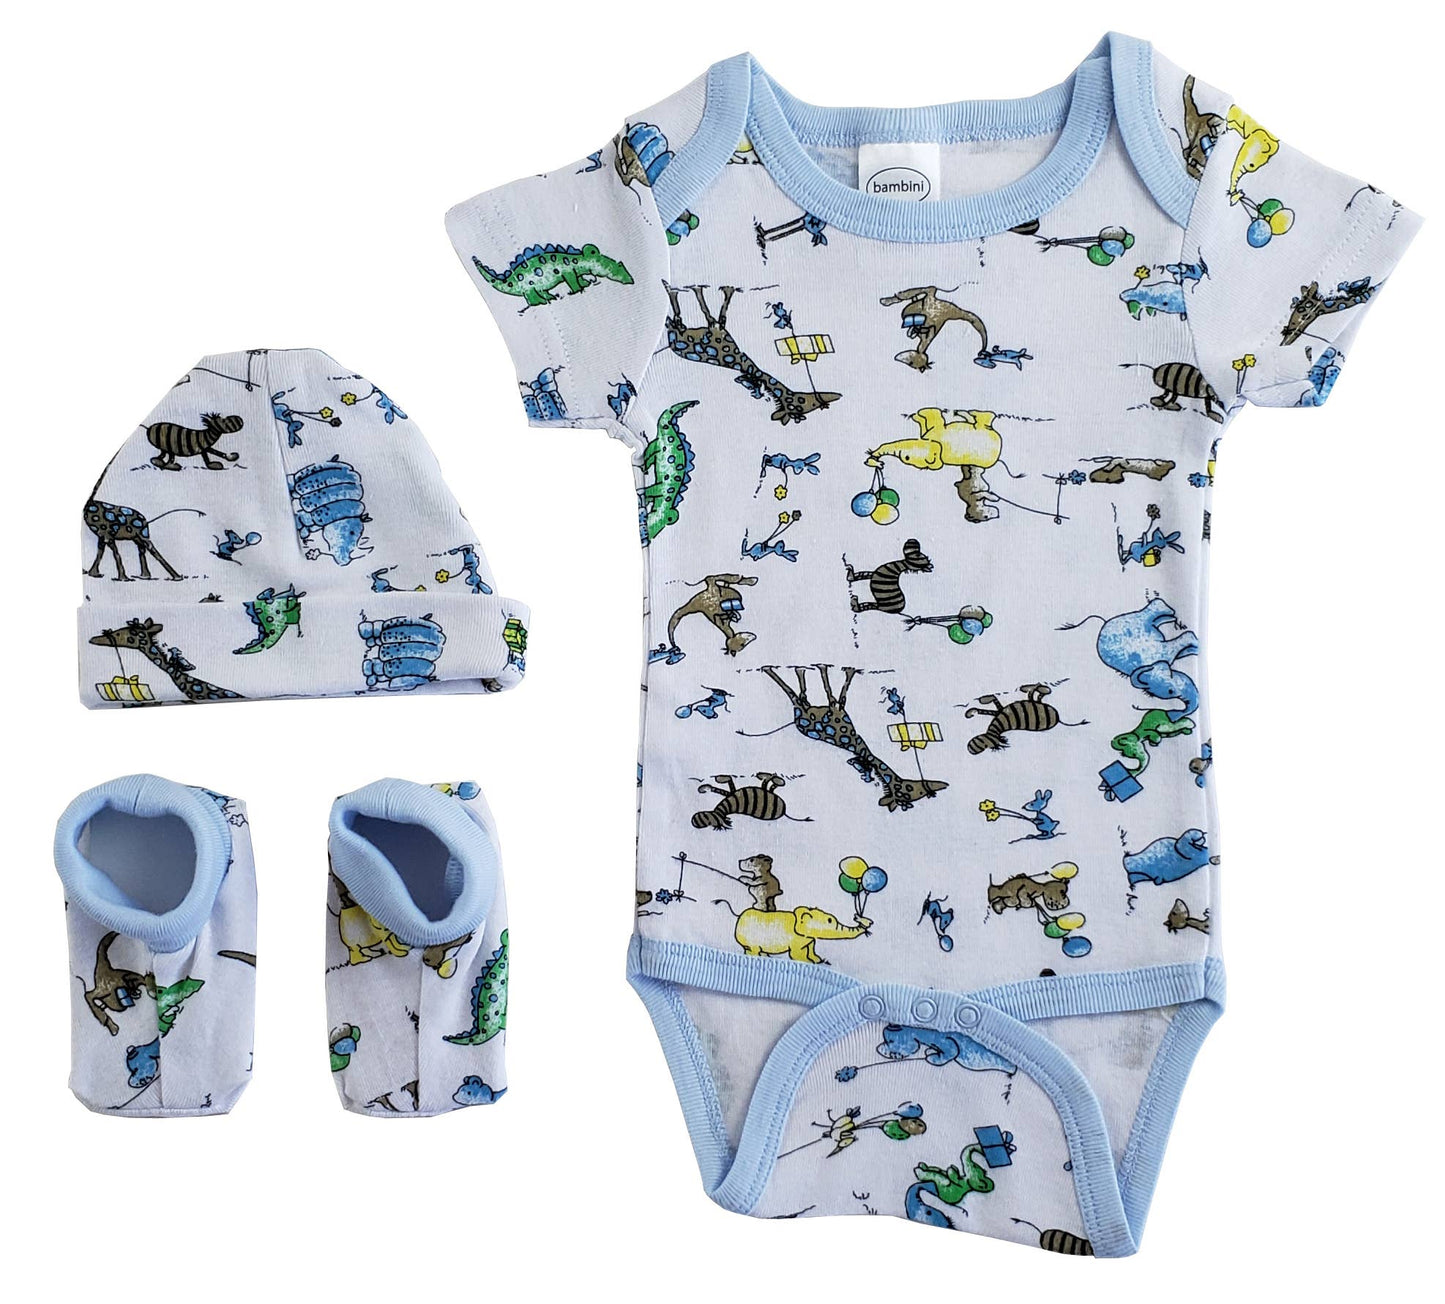 Bambini Infant Wear inc. - Bambini Boys Baby Gift Set